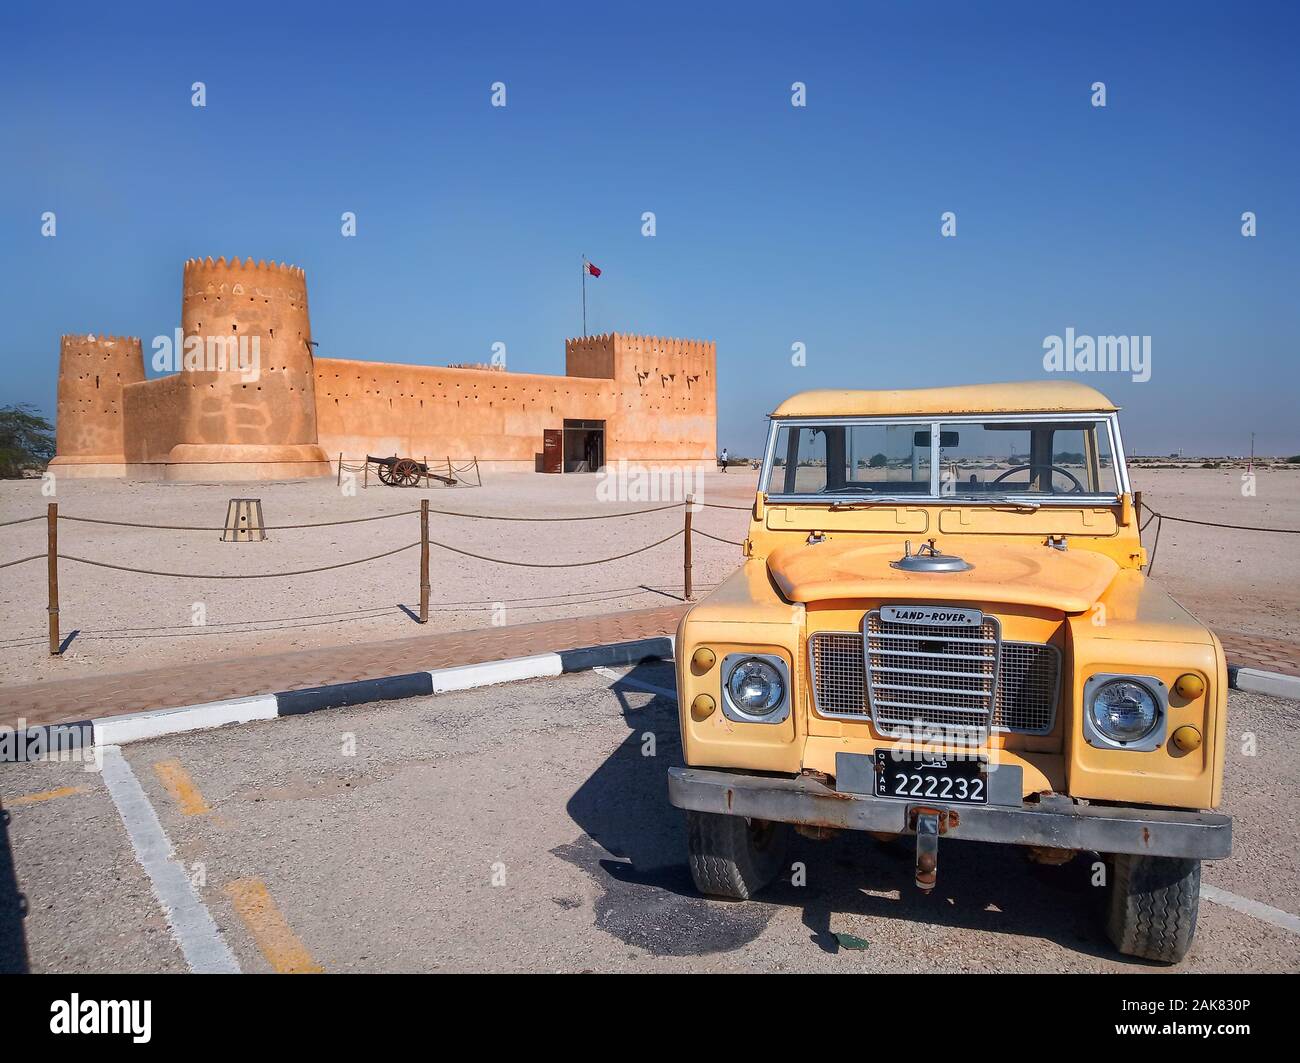 Il Forte al Zubara è una storica fortezza militare Qatar costruita nel 1928. E' una delle principali attrazioni turistiche del Qatar. Foto Stock